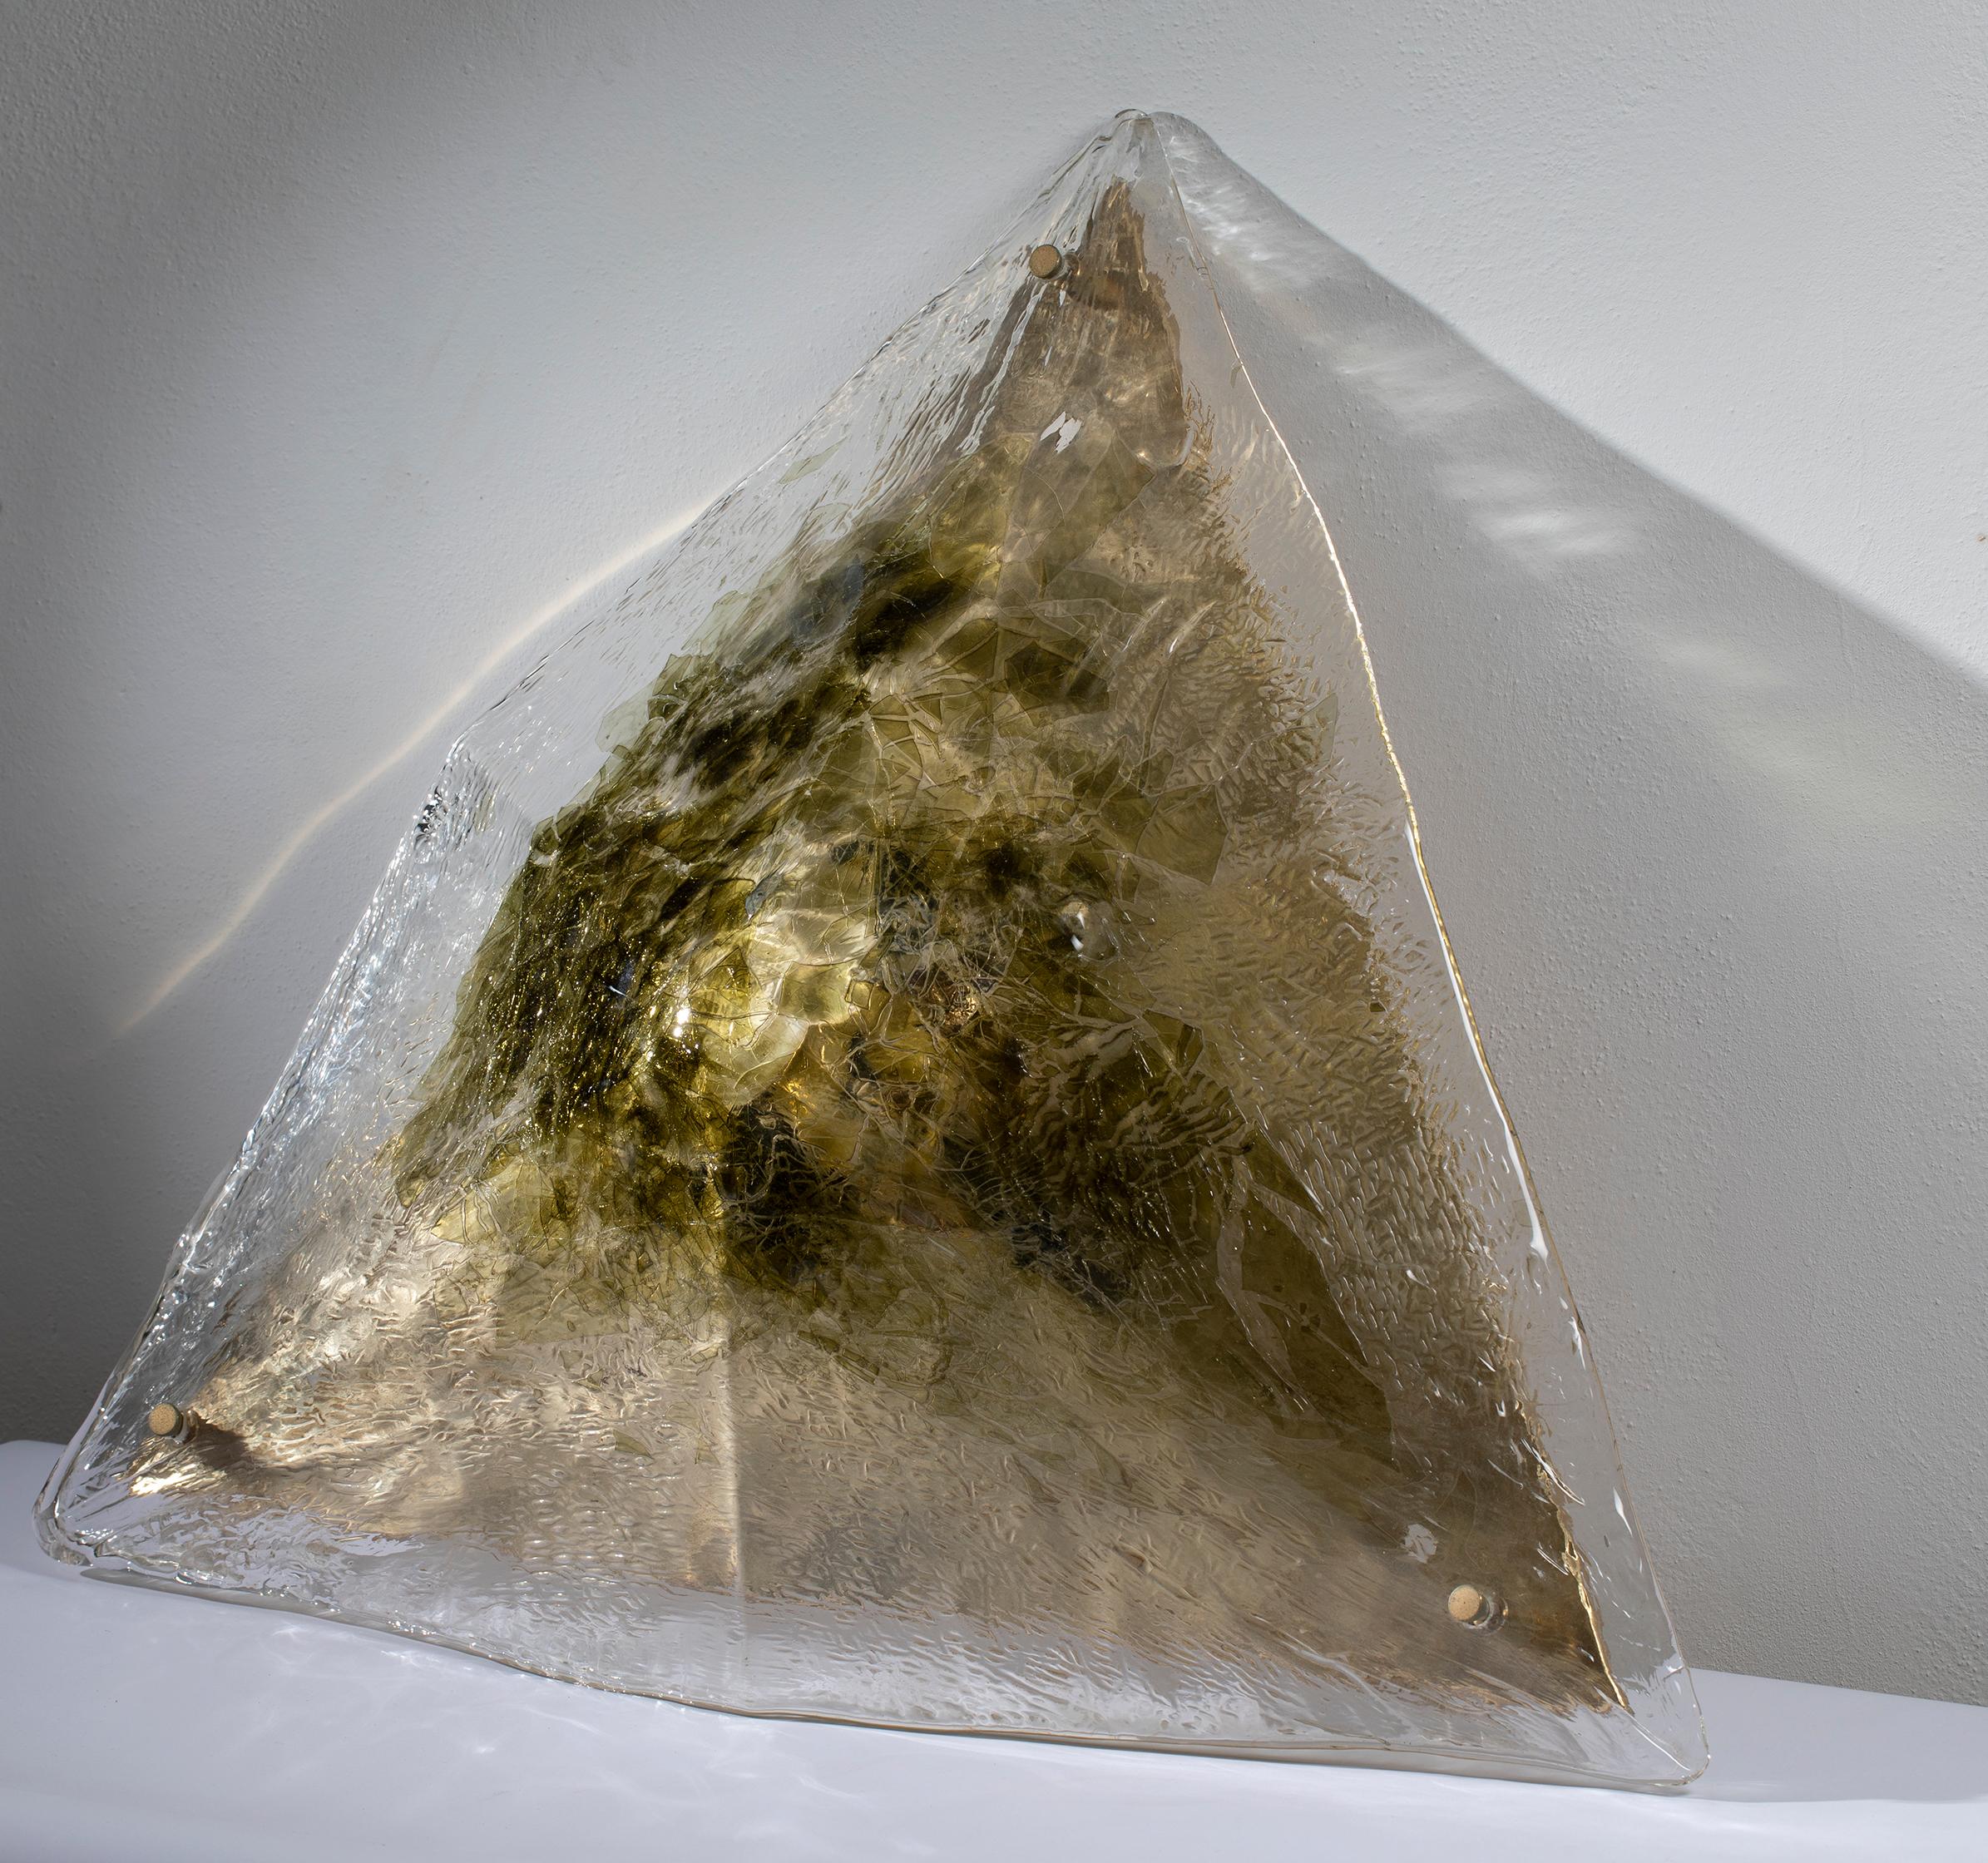 Grande plafoniera a forma piramidale, prodotta da La murrina negli anni 70, in vetro di Murano con inclusioni nei toni del verde e del giallo ambra. L'attacco al soffitto è una grande piastra in ottone, visibile in foto. L'impianto elettrico è coevo